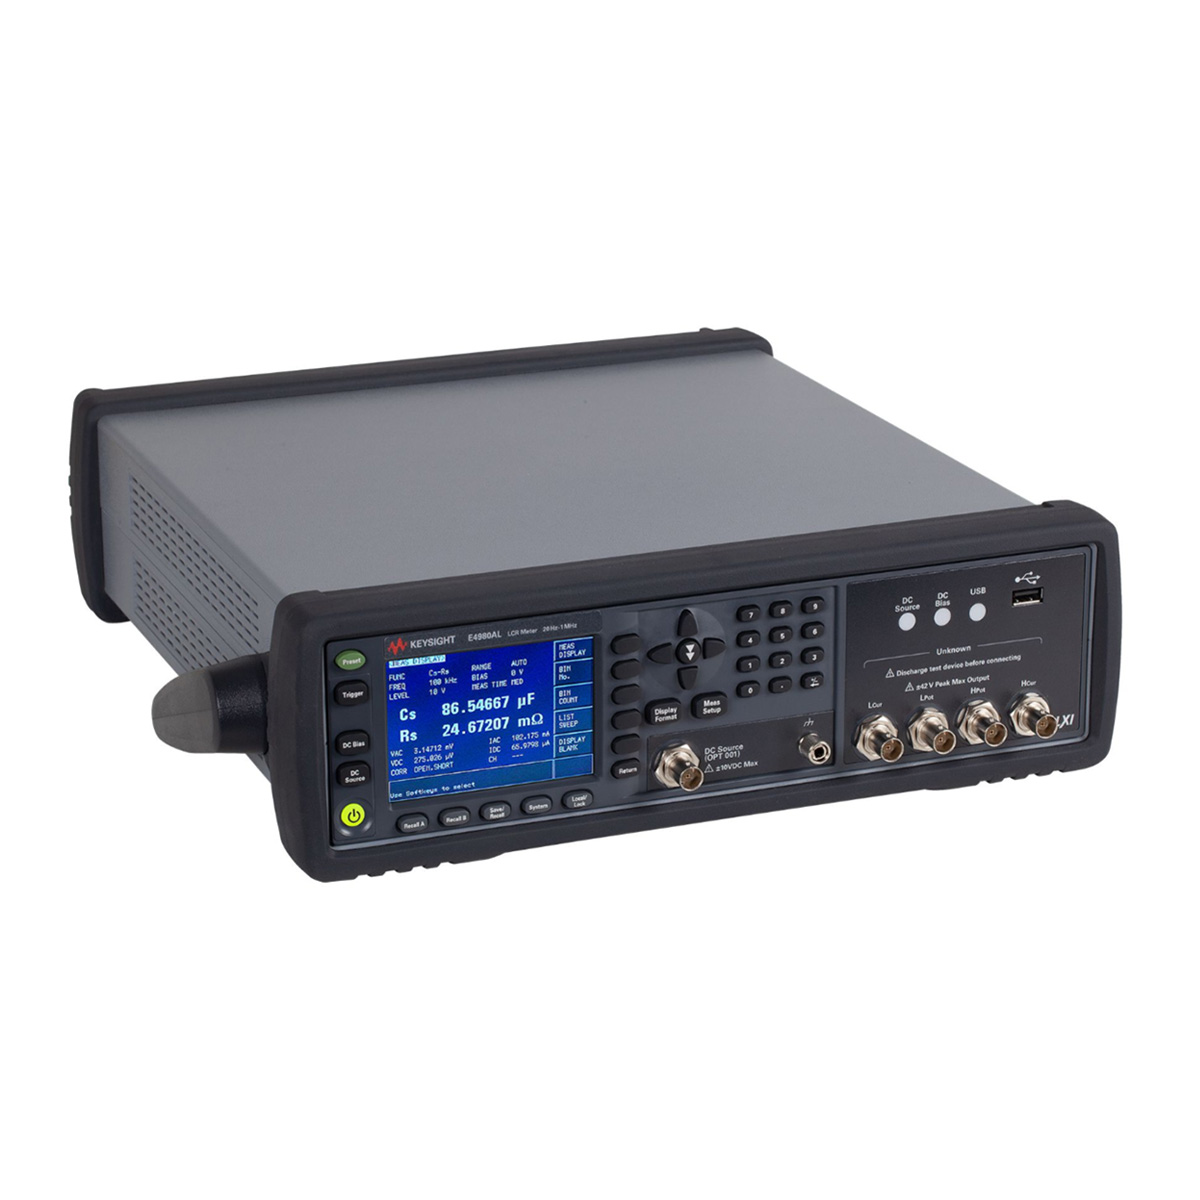 E4980AL 精密 LCR 表，20 Hz 至 300 kHz/500 kHz/1 MHz